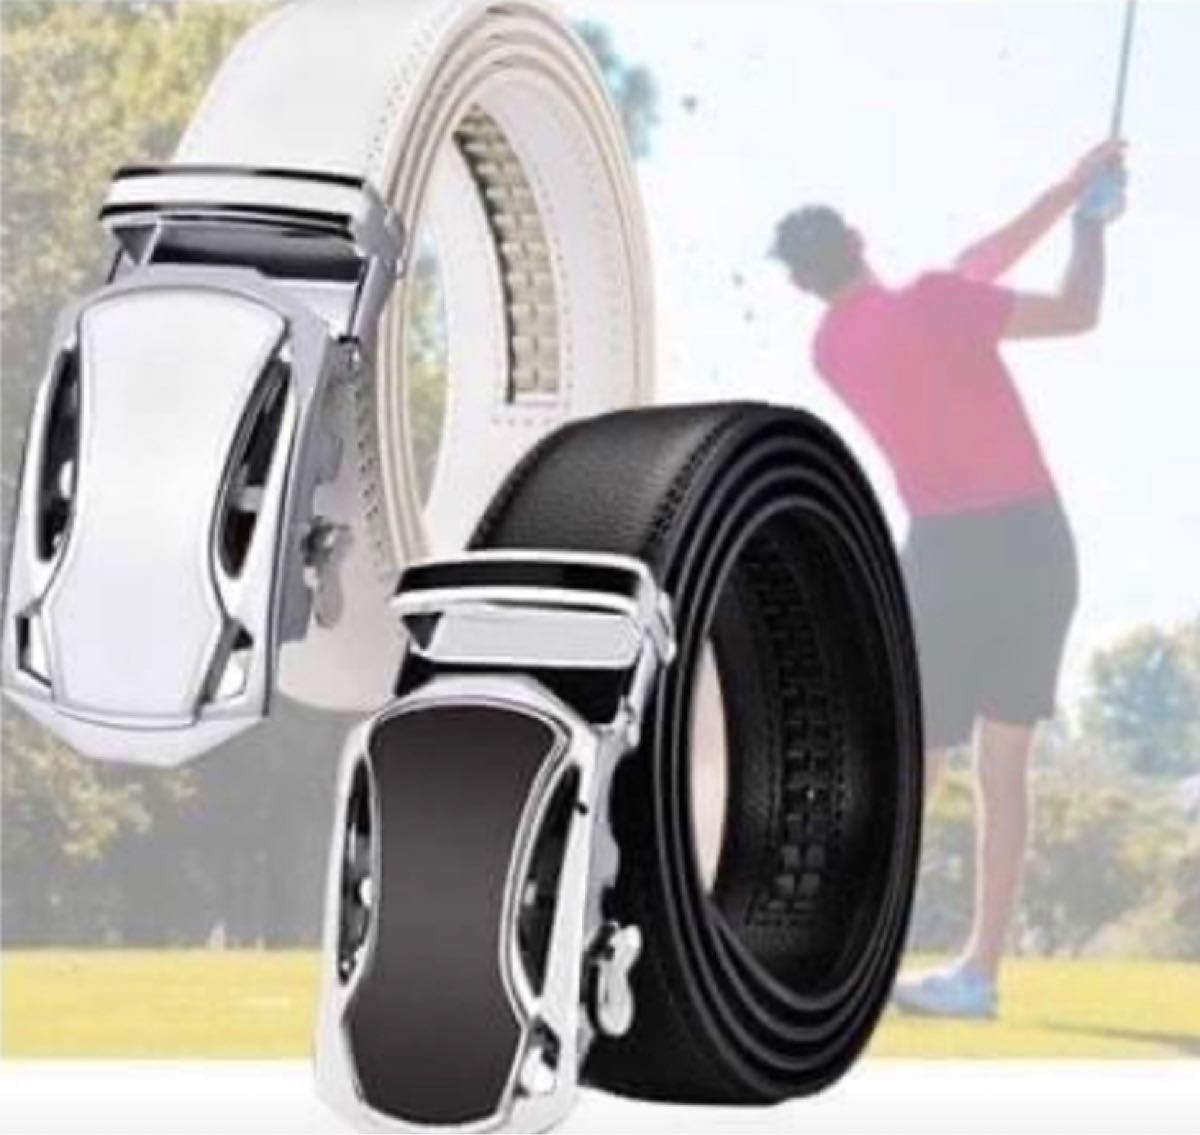 【黒】 オートロック式 ゴルフベルト 革 穴なし サイズ調整可 メンズ 人気商品 穴なしベルト メンズベルト